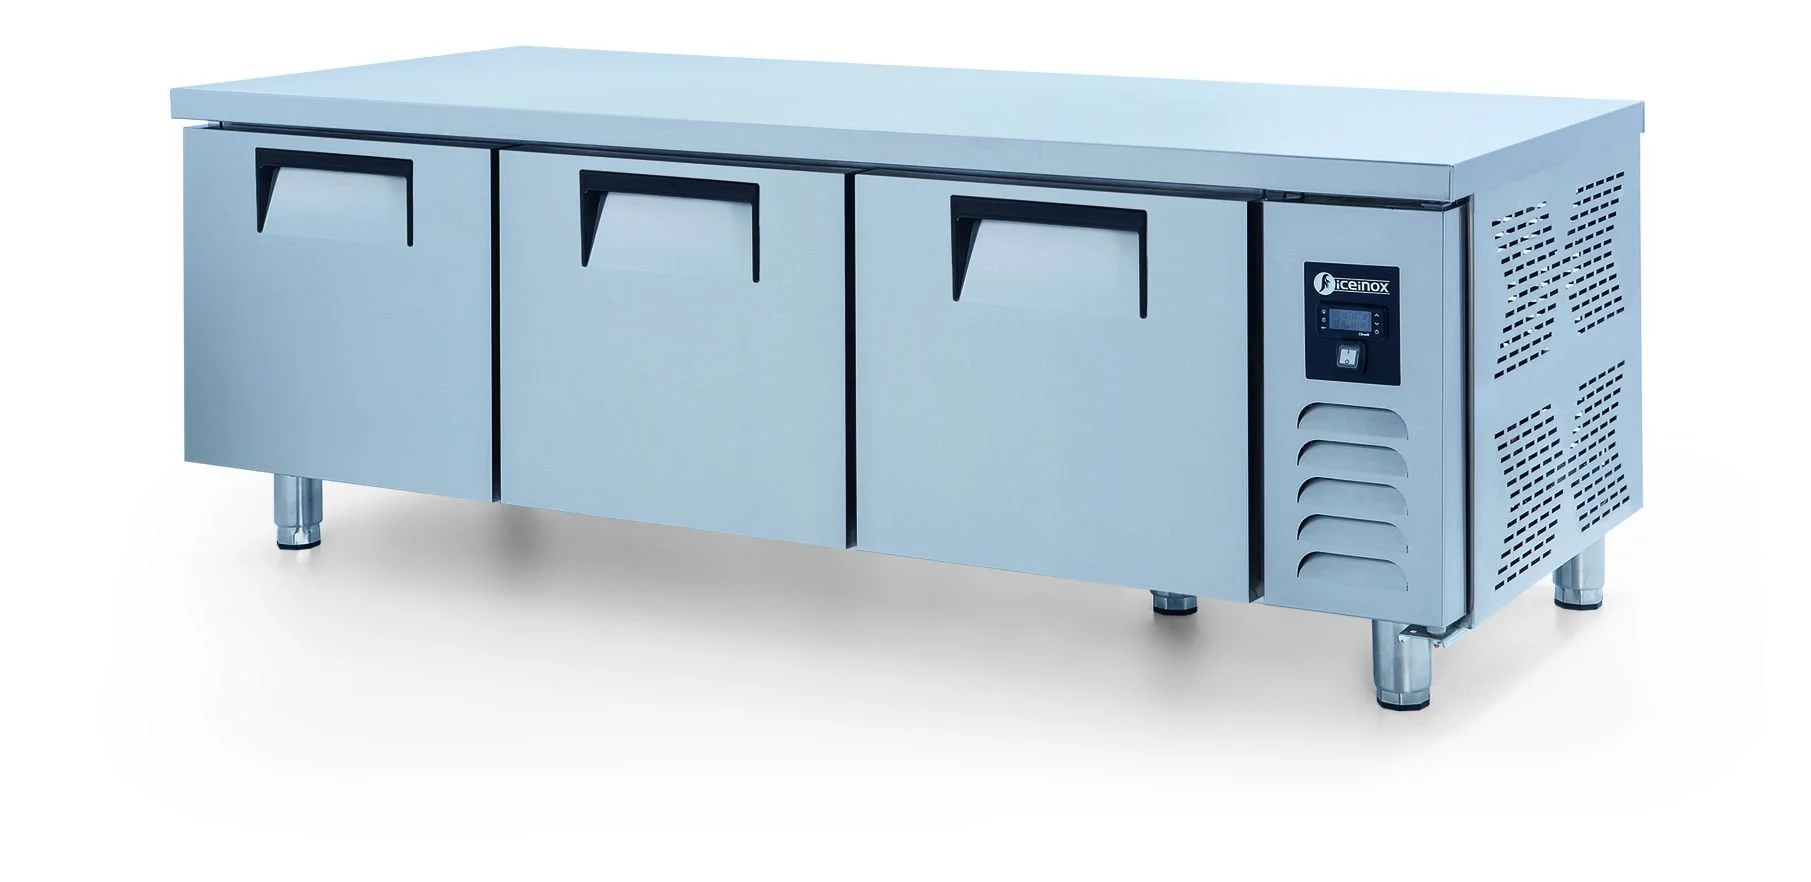 Iceinox UTN 330 CR Kısa Model Pişirici Altı Buzdolabı, 3 Kapılı, 330 L